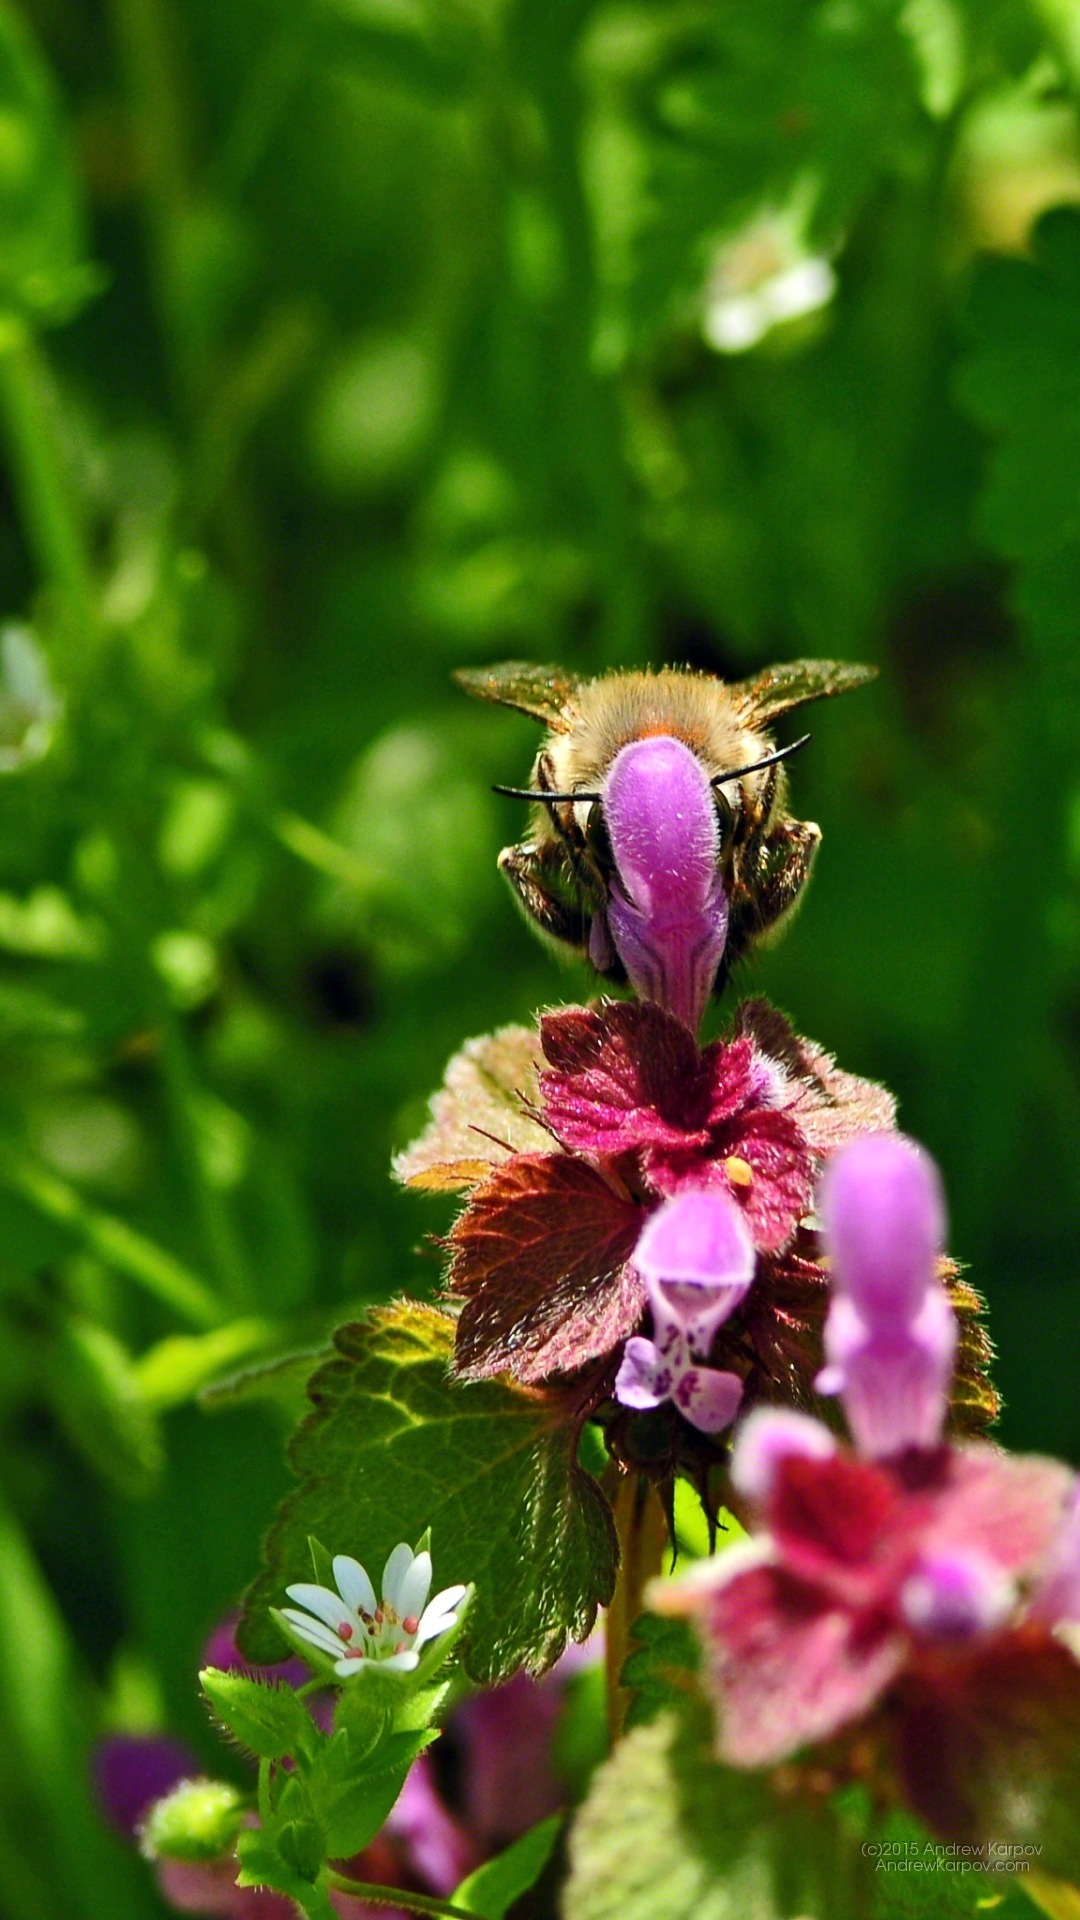 fond d'écran untuk iphone 6,plante à fleurs,fleur,abeille,insecte,abeille